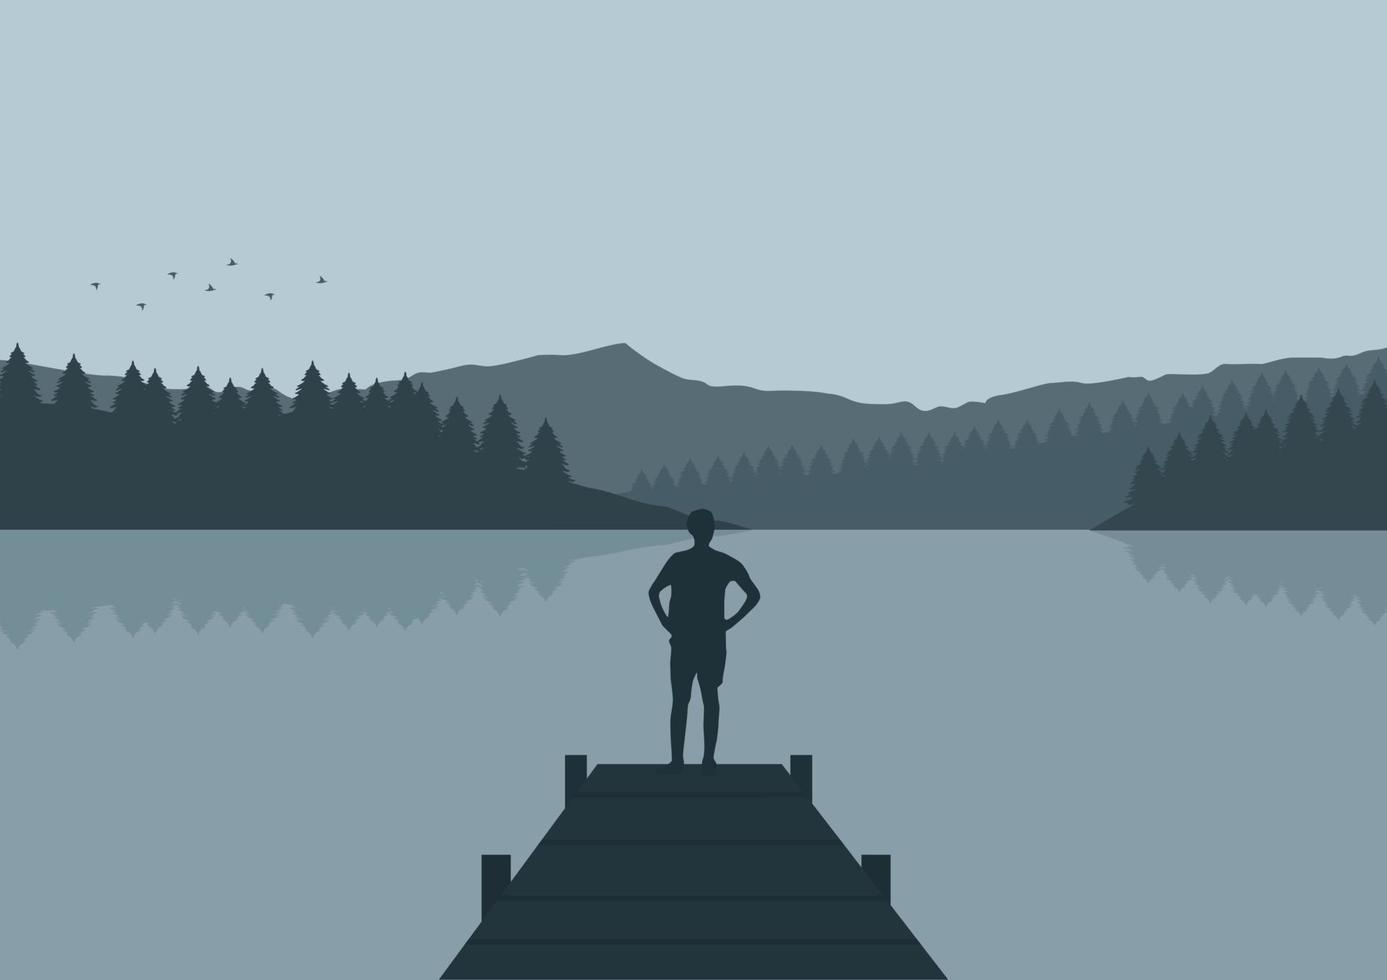 persoon silhouet in de meer en berg, vector illustratie.